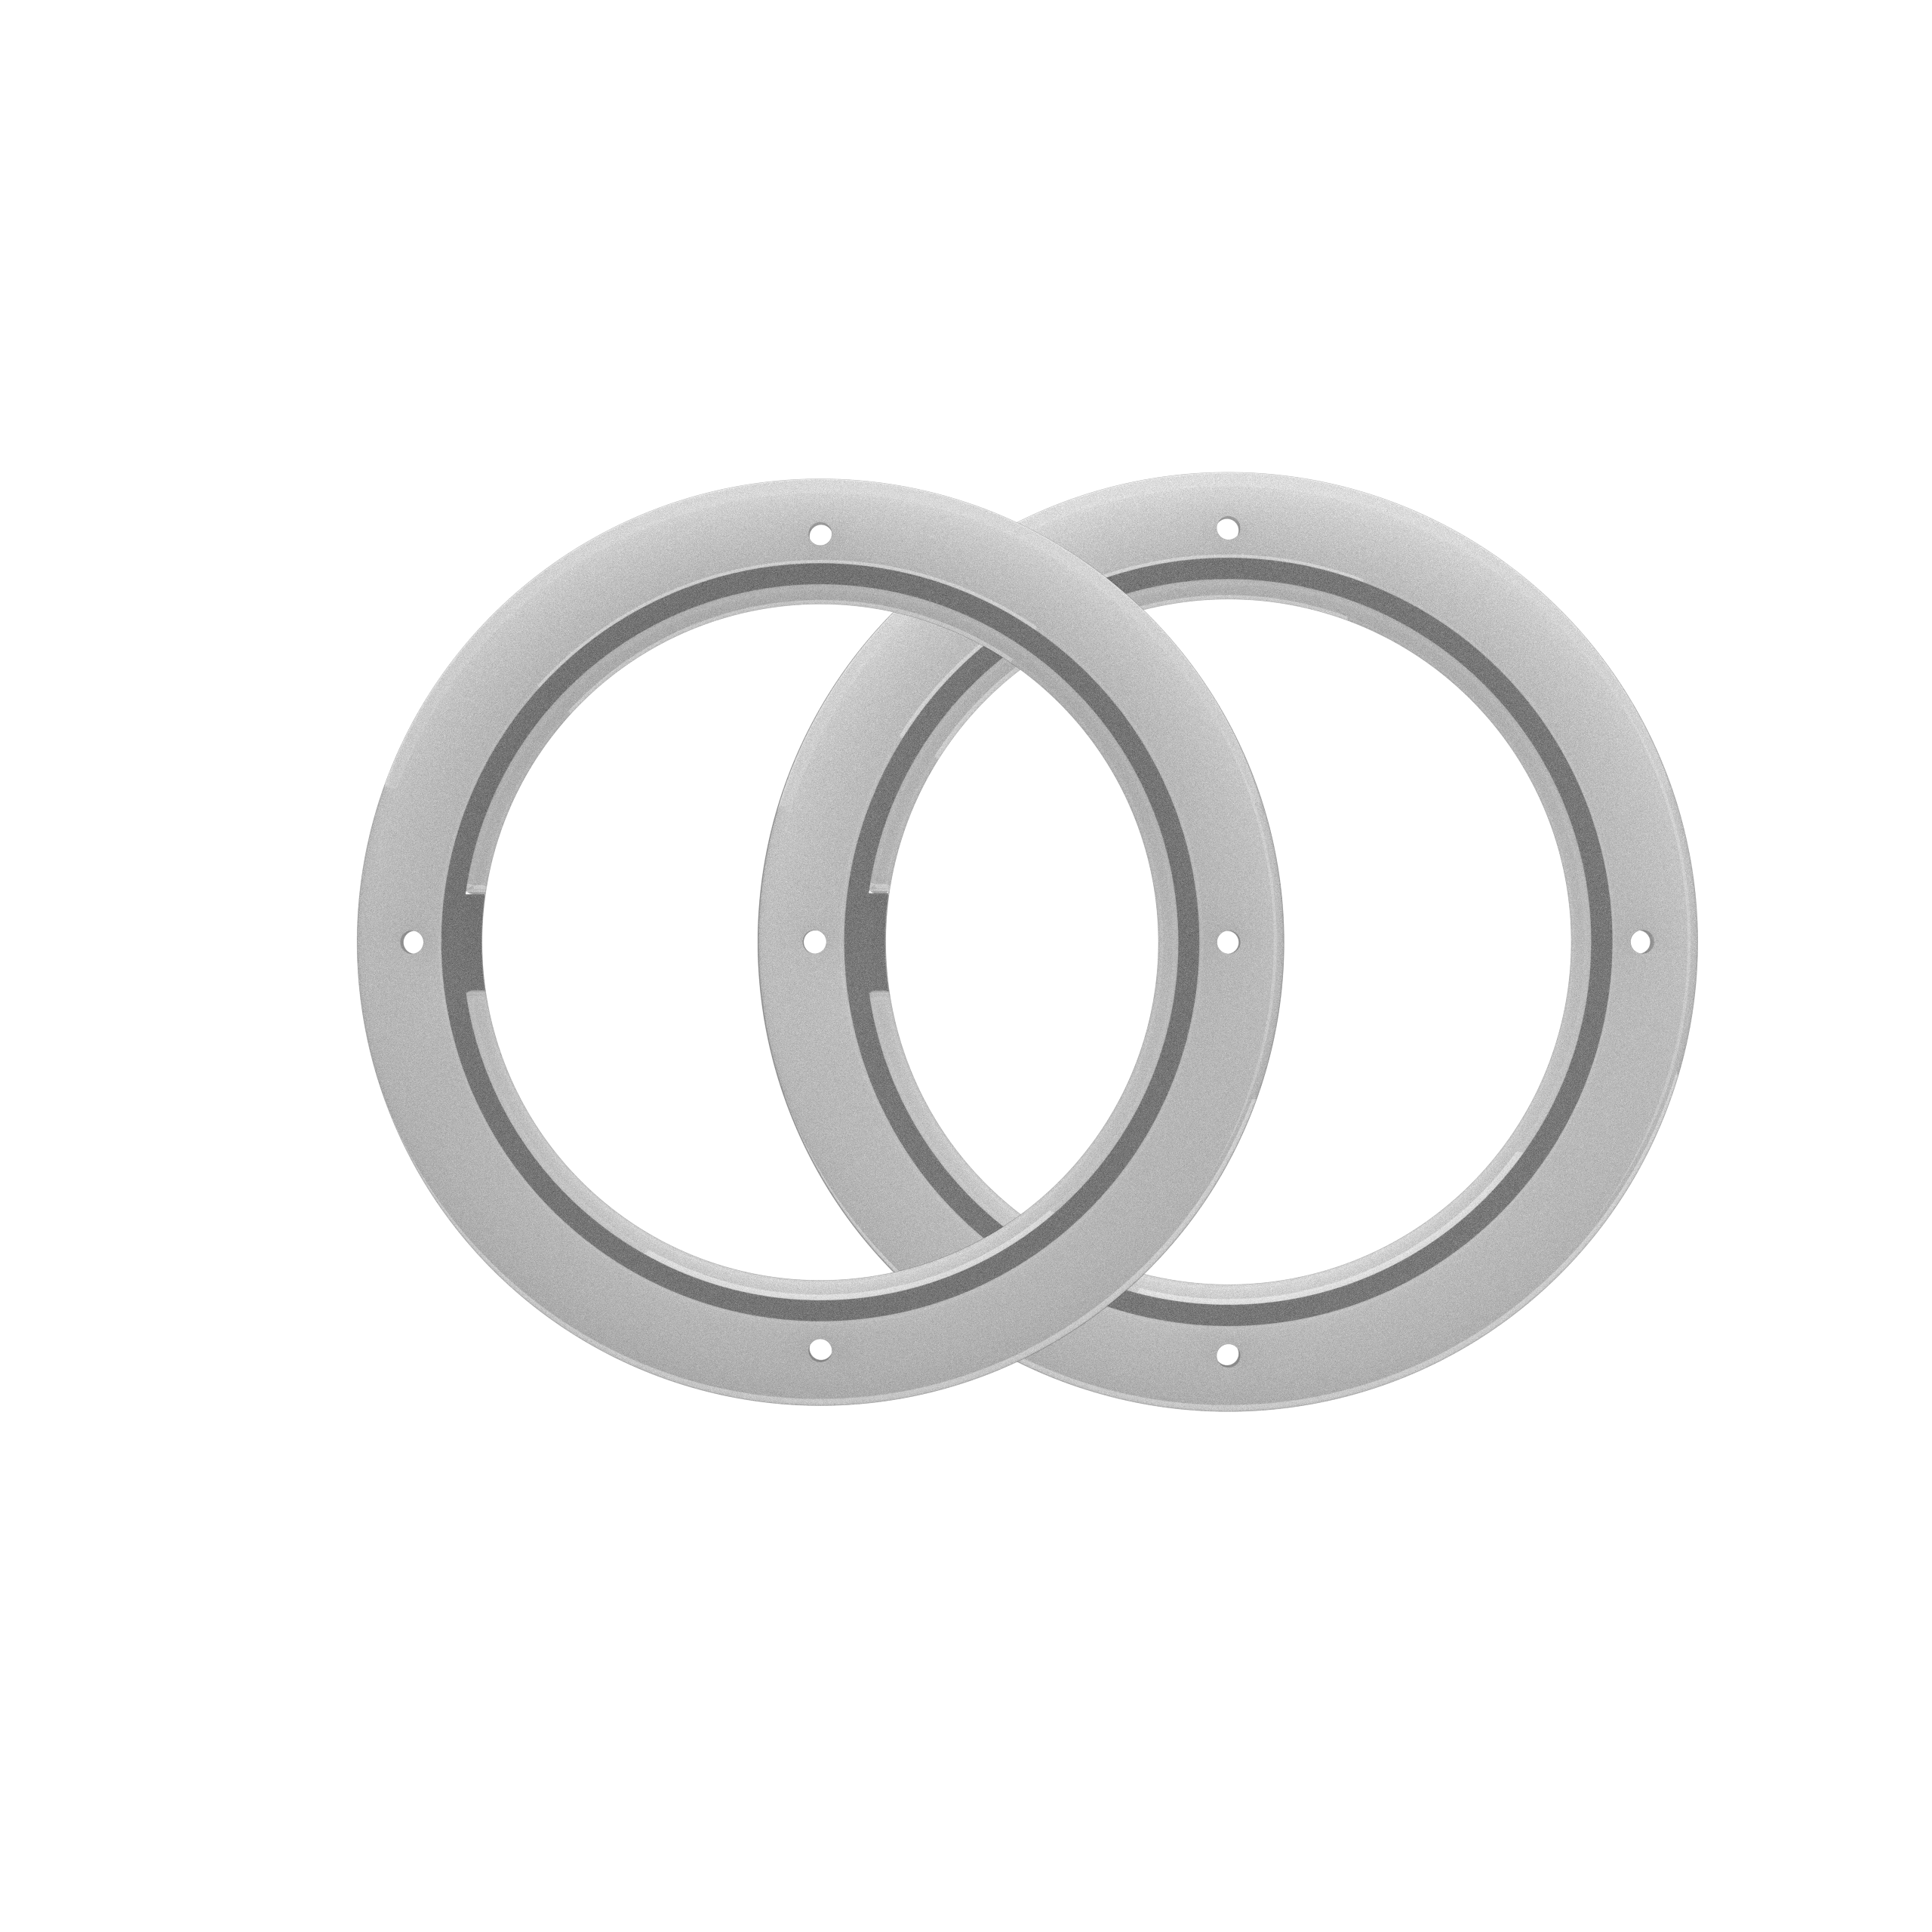 WET SOUNDS Kits 6" LED Ring Kit